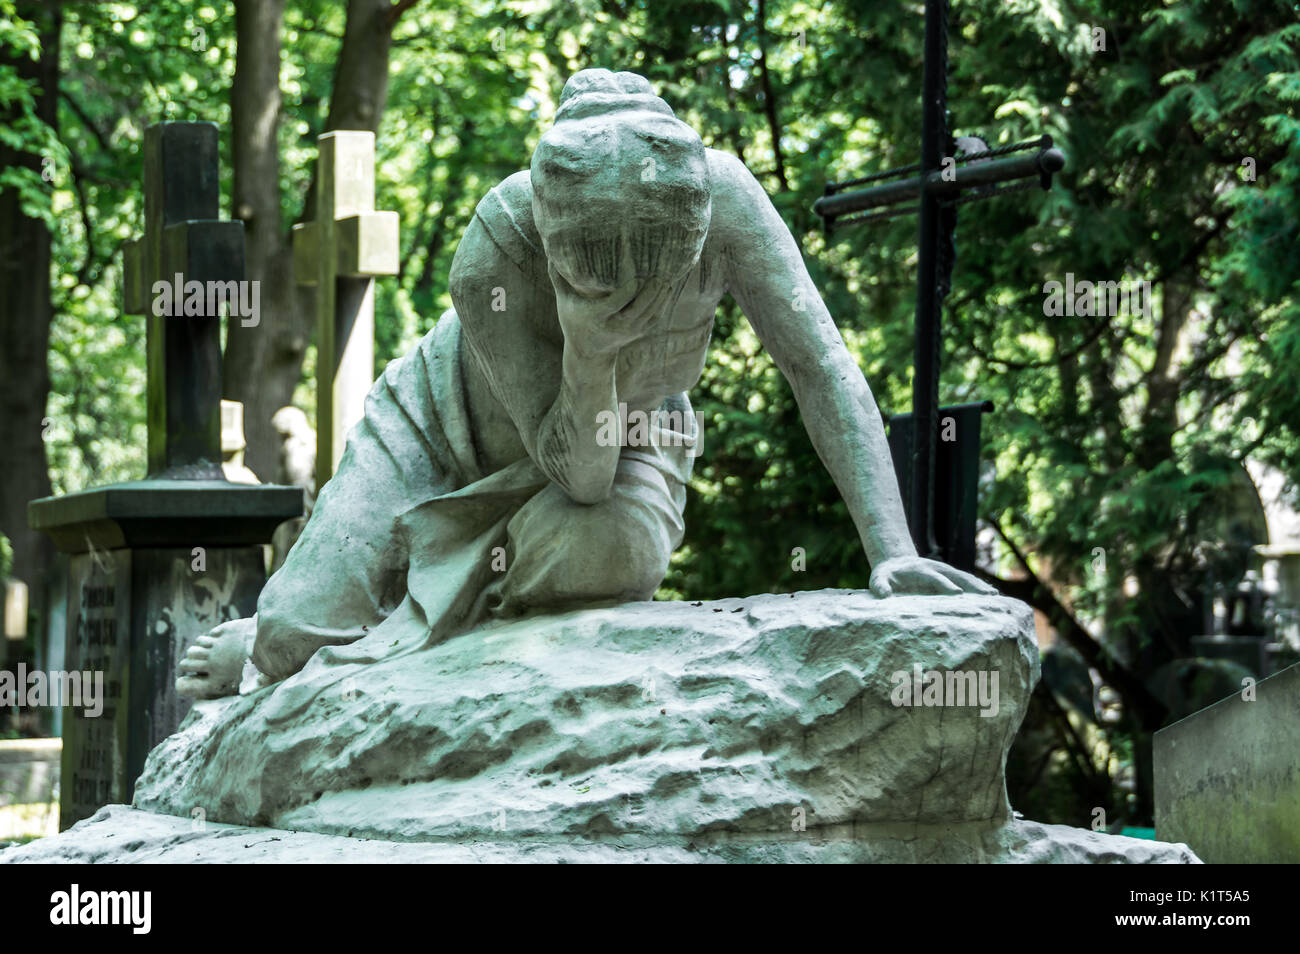 Pologne, Varsovie : statue d'une pleurs au cimetière de Powazki, le plus ancien et le plus célèbre cimetière du pays. Banque D'Images